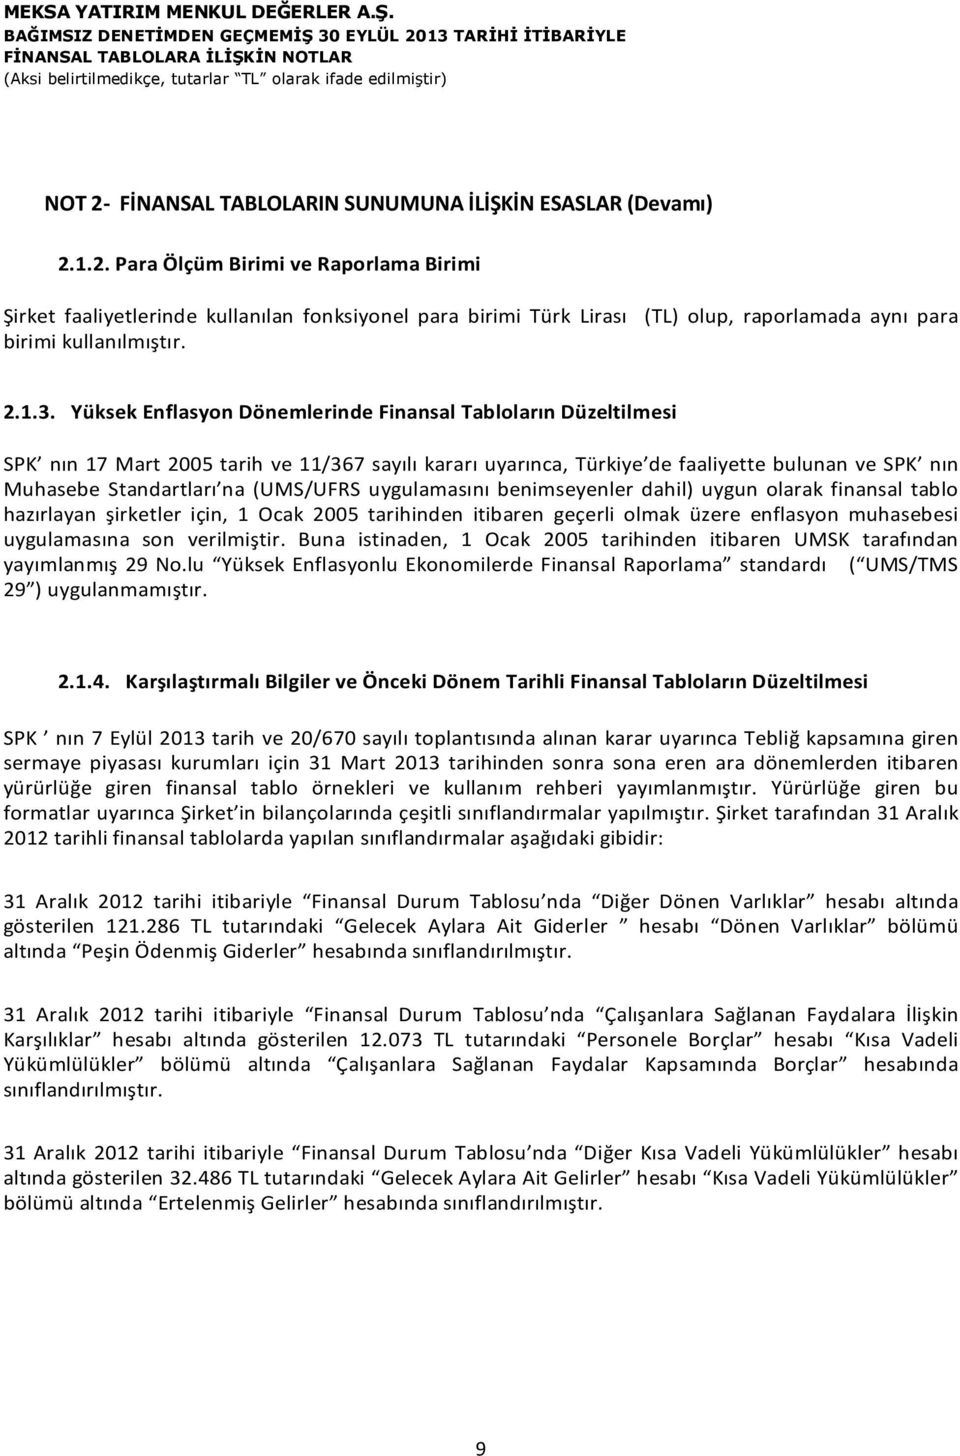 Yüksek Enflasyon Dönemlerinde Finansal Tabloların Düzeltilmesi SPK nın 17 Mart 2005 tarih ve 11/367 sayılı kararı uyarınca, Türkiye de faaliyette bulunan ve SPK nın Muhasebe Standartları na (UMS/UFRS